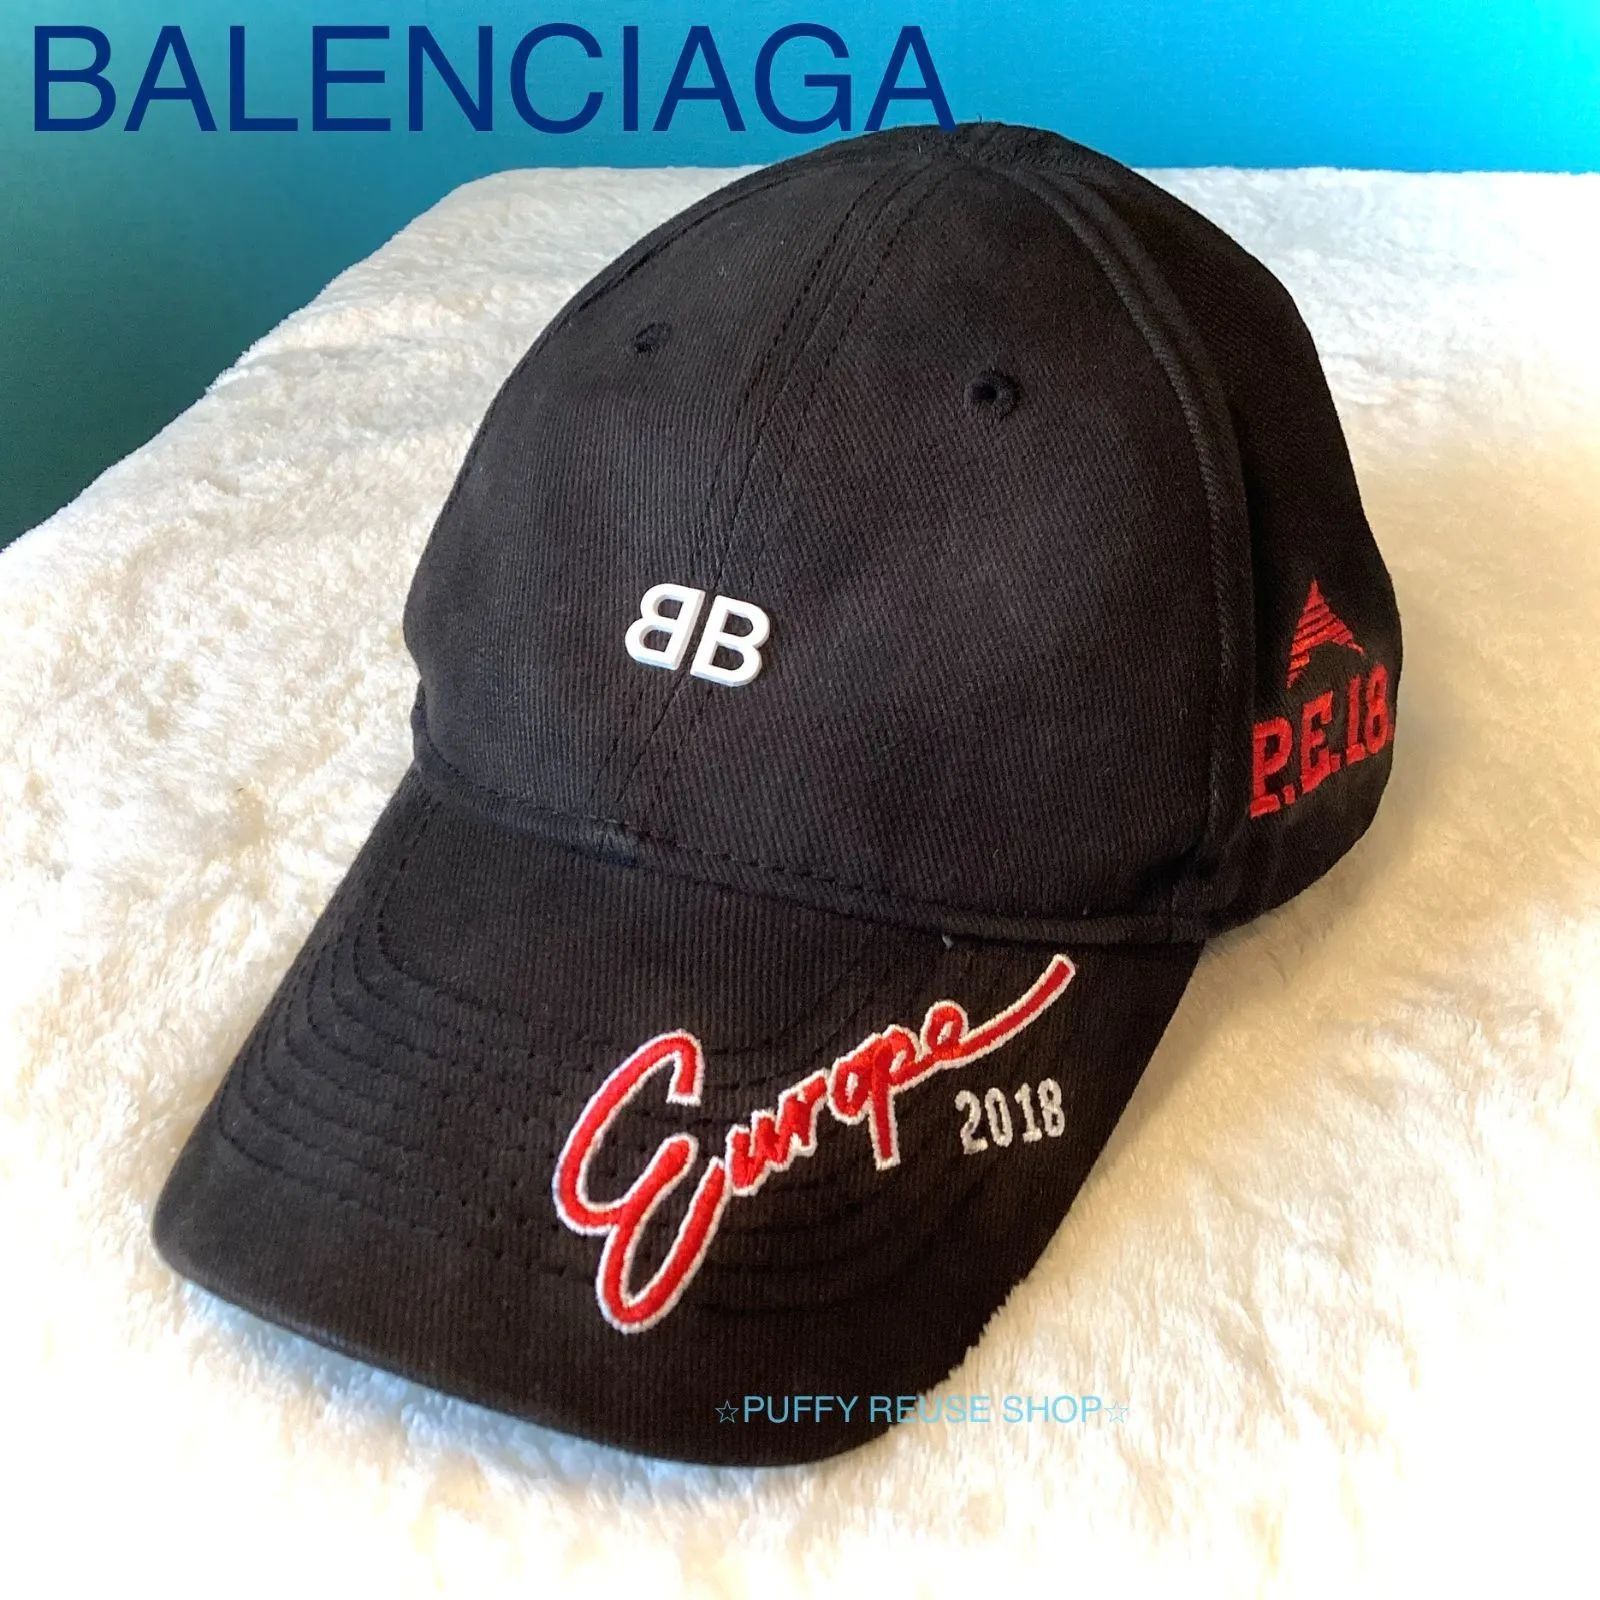 バレンシアガ BB ベースボールキャップ 2018 ロゴ 刺繍 ブラック